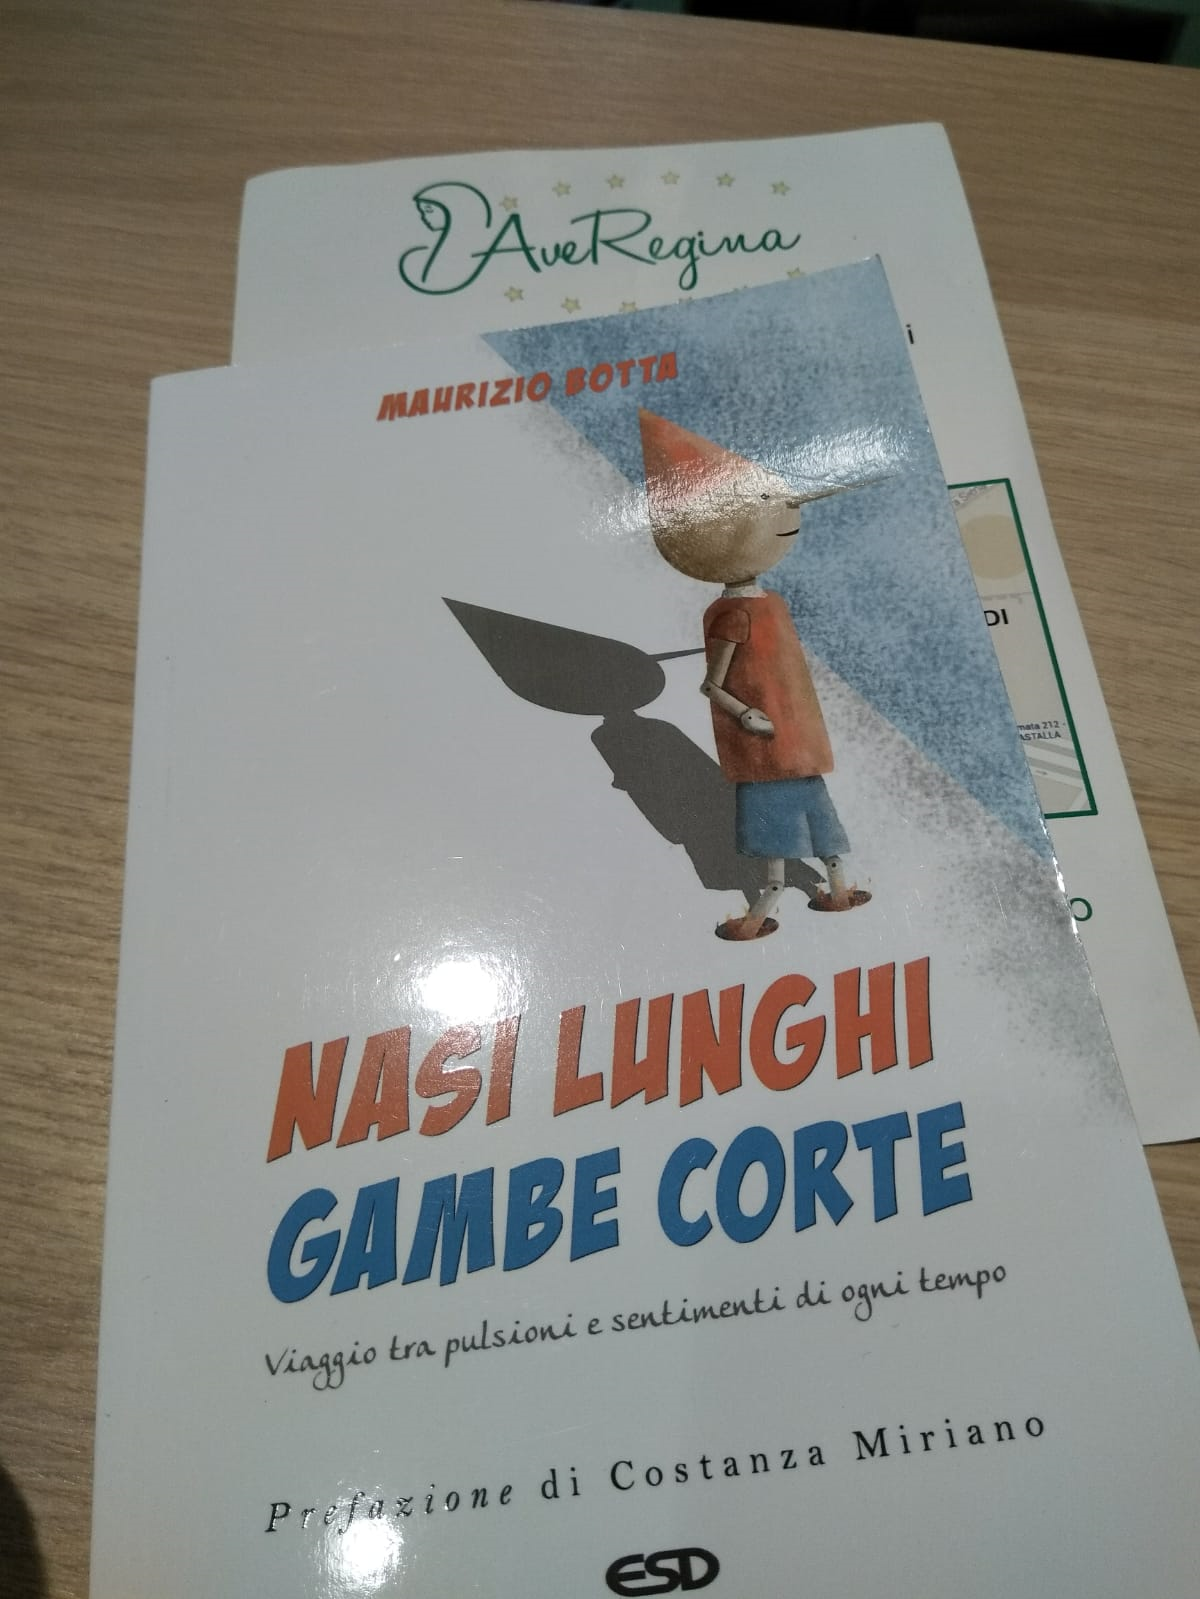 NASI LUNGHI GAMBE CORTE - P.Maurizio Botta